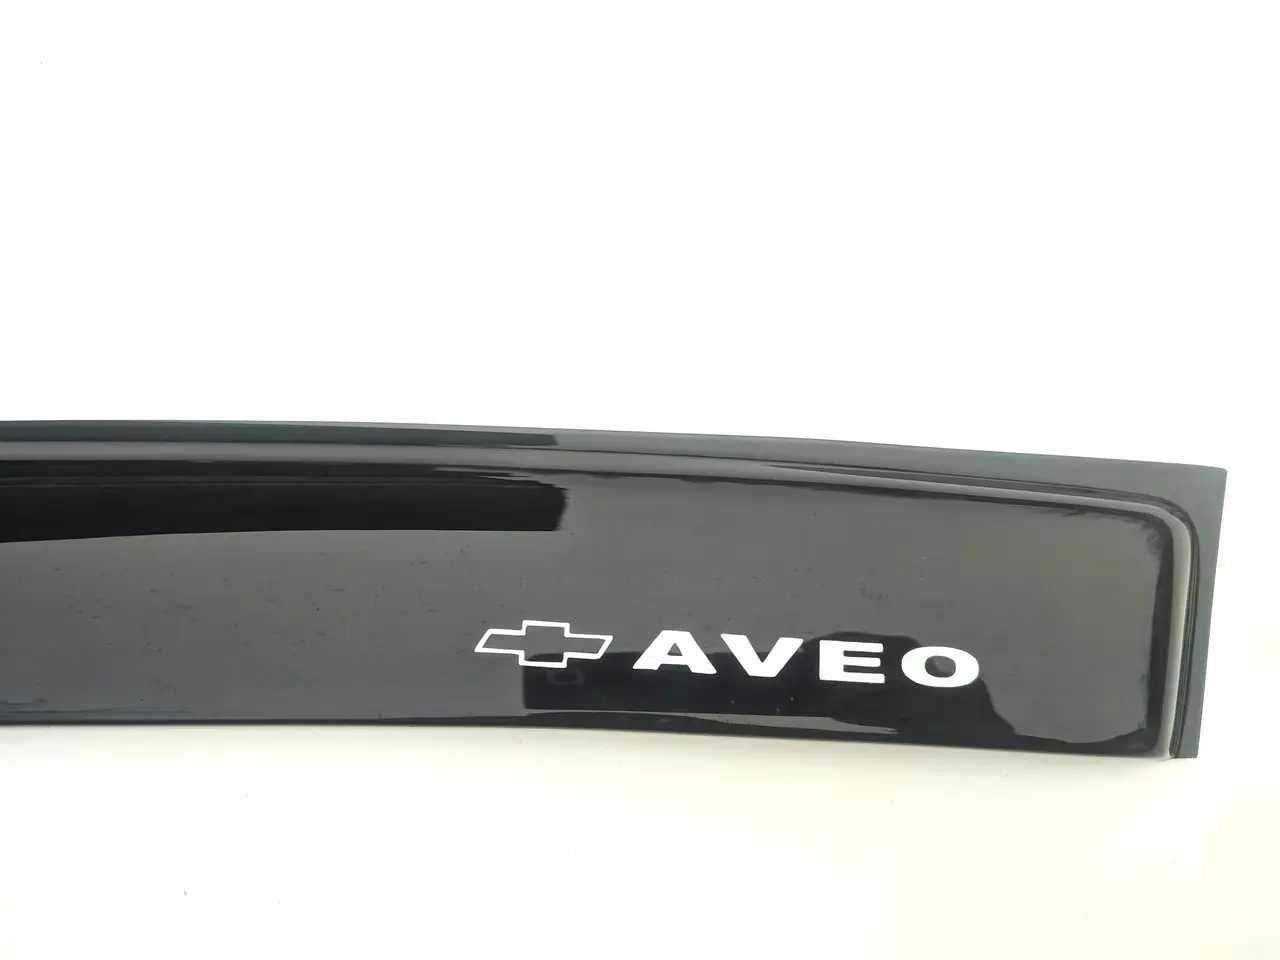 Дефлекторы окон CHEVROLET Aveo I,II Hb 2003-2008 (на скотче) ветровики